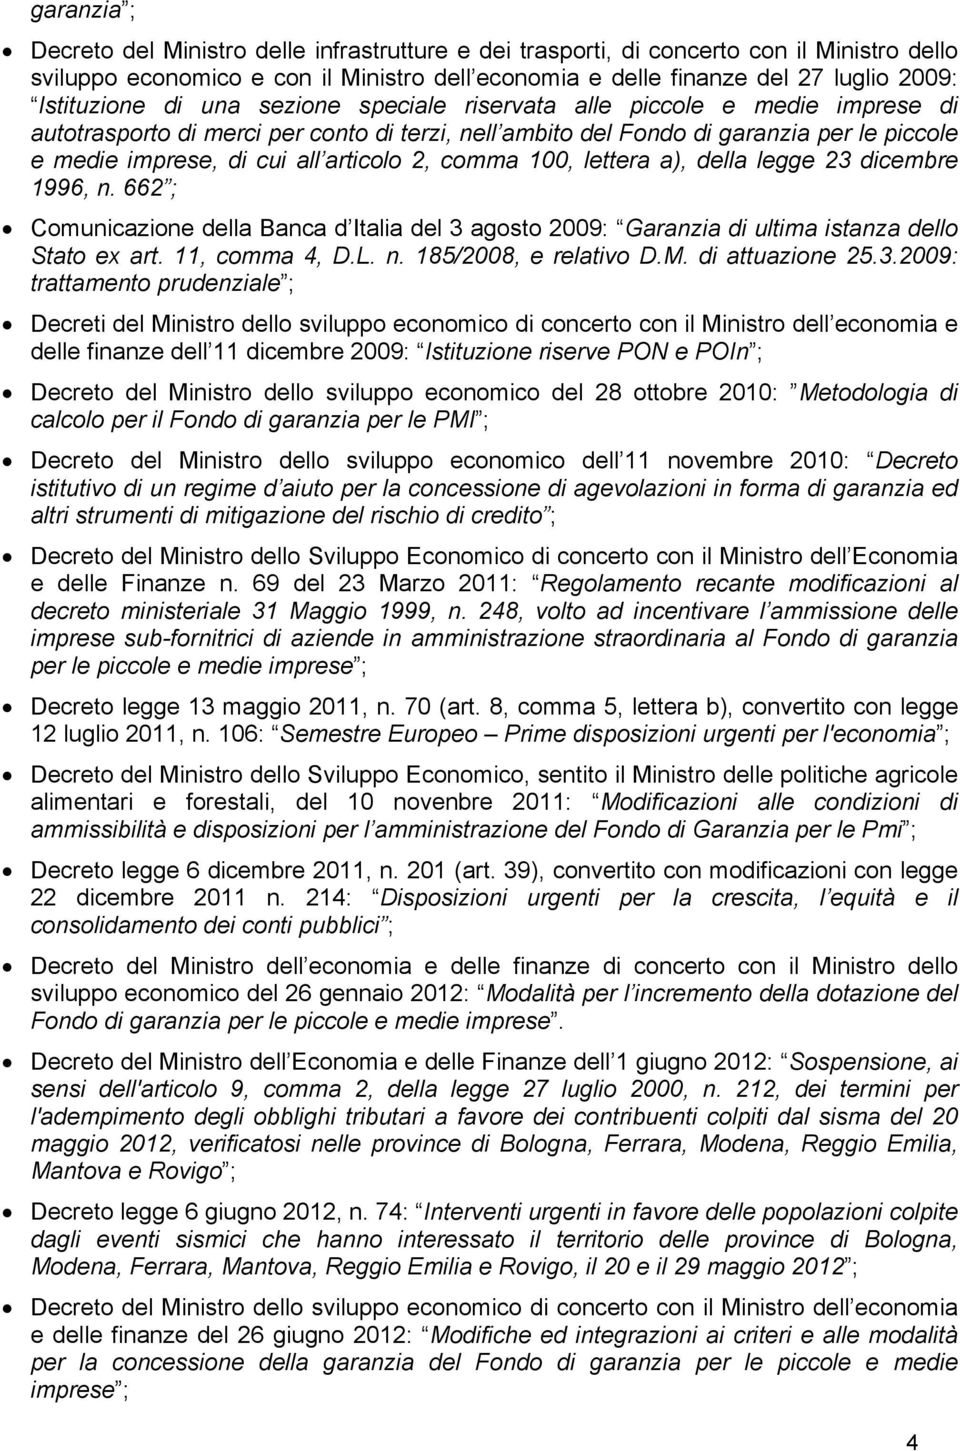 articolo 2, comma 100, lettera a), della legge 23 dicembre 1996, n. 662 ; Comunicazione della Banca d Italia del 3 agosto 2009: Garanzia di ultima istanza dello Stato ex art. 11, comma 4, D.L. n. 185/2008, e relativo D.